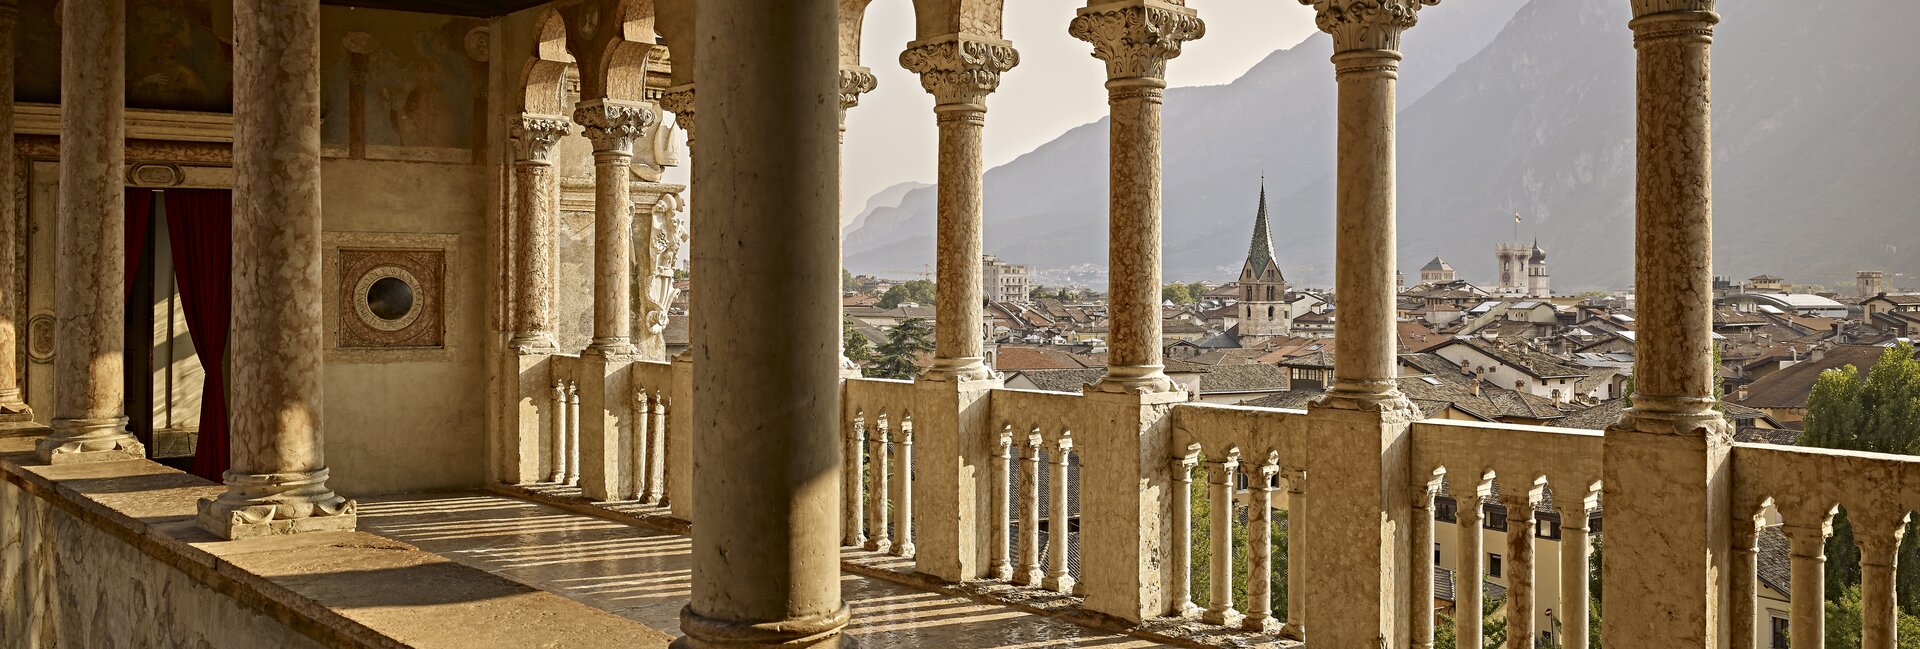 Trento Włochy - Odwiedź Zamek Buonconsiglio 